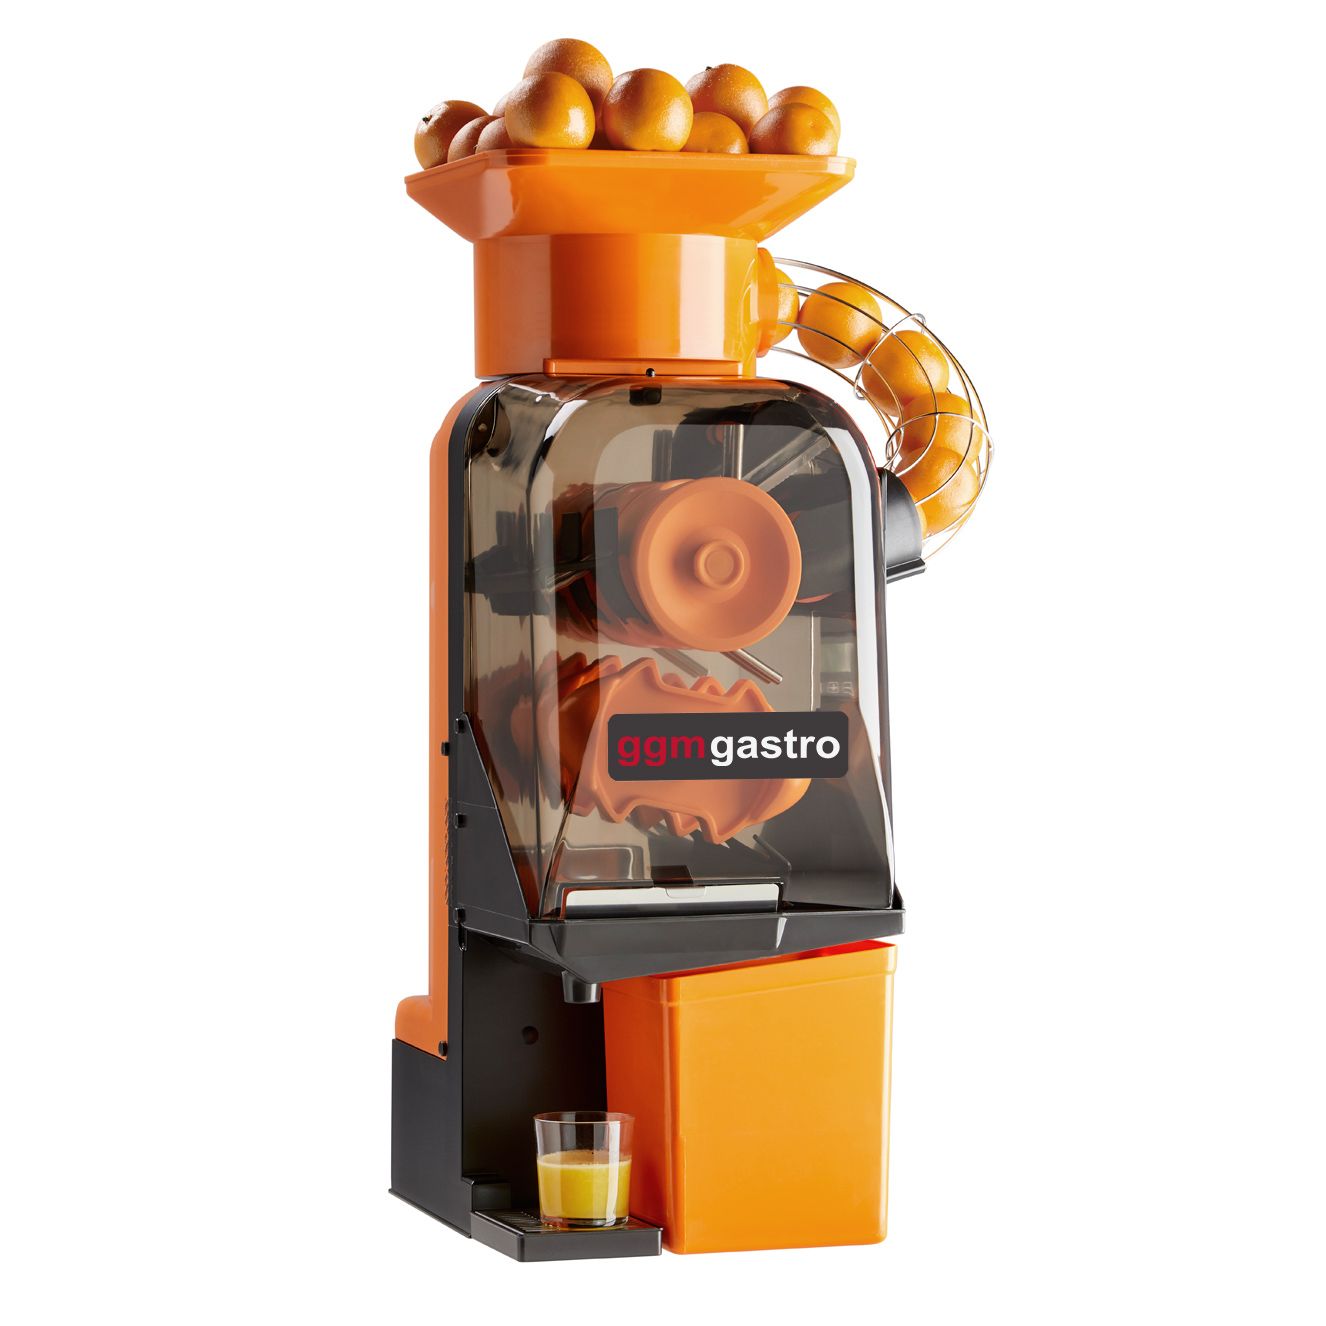  Exprimidor eléctrico automático de jugo de naranja, manos  libres, levanta y gira en ambas direcciones, motor silencioso, diseño  dividido para limpieza y fácil desmontaje, plata/acero inoxidable : Hogar y  Cocina